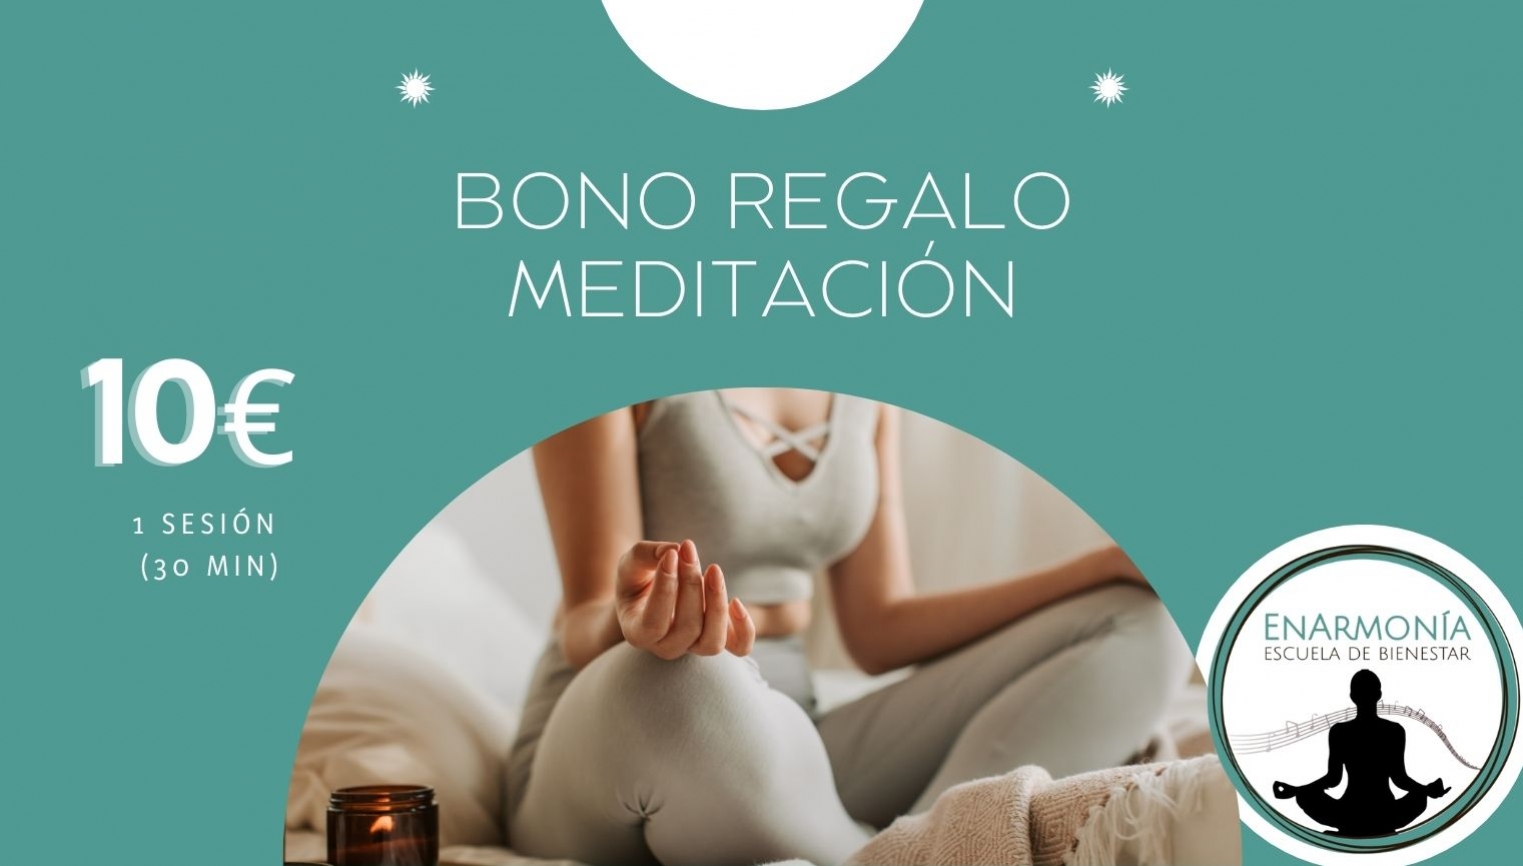 Bono Regalo Meditación - foto 1/1